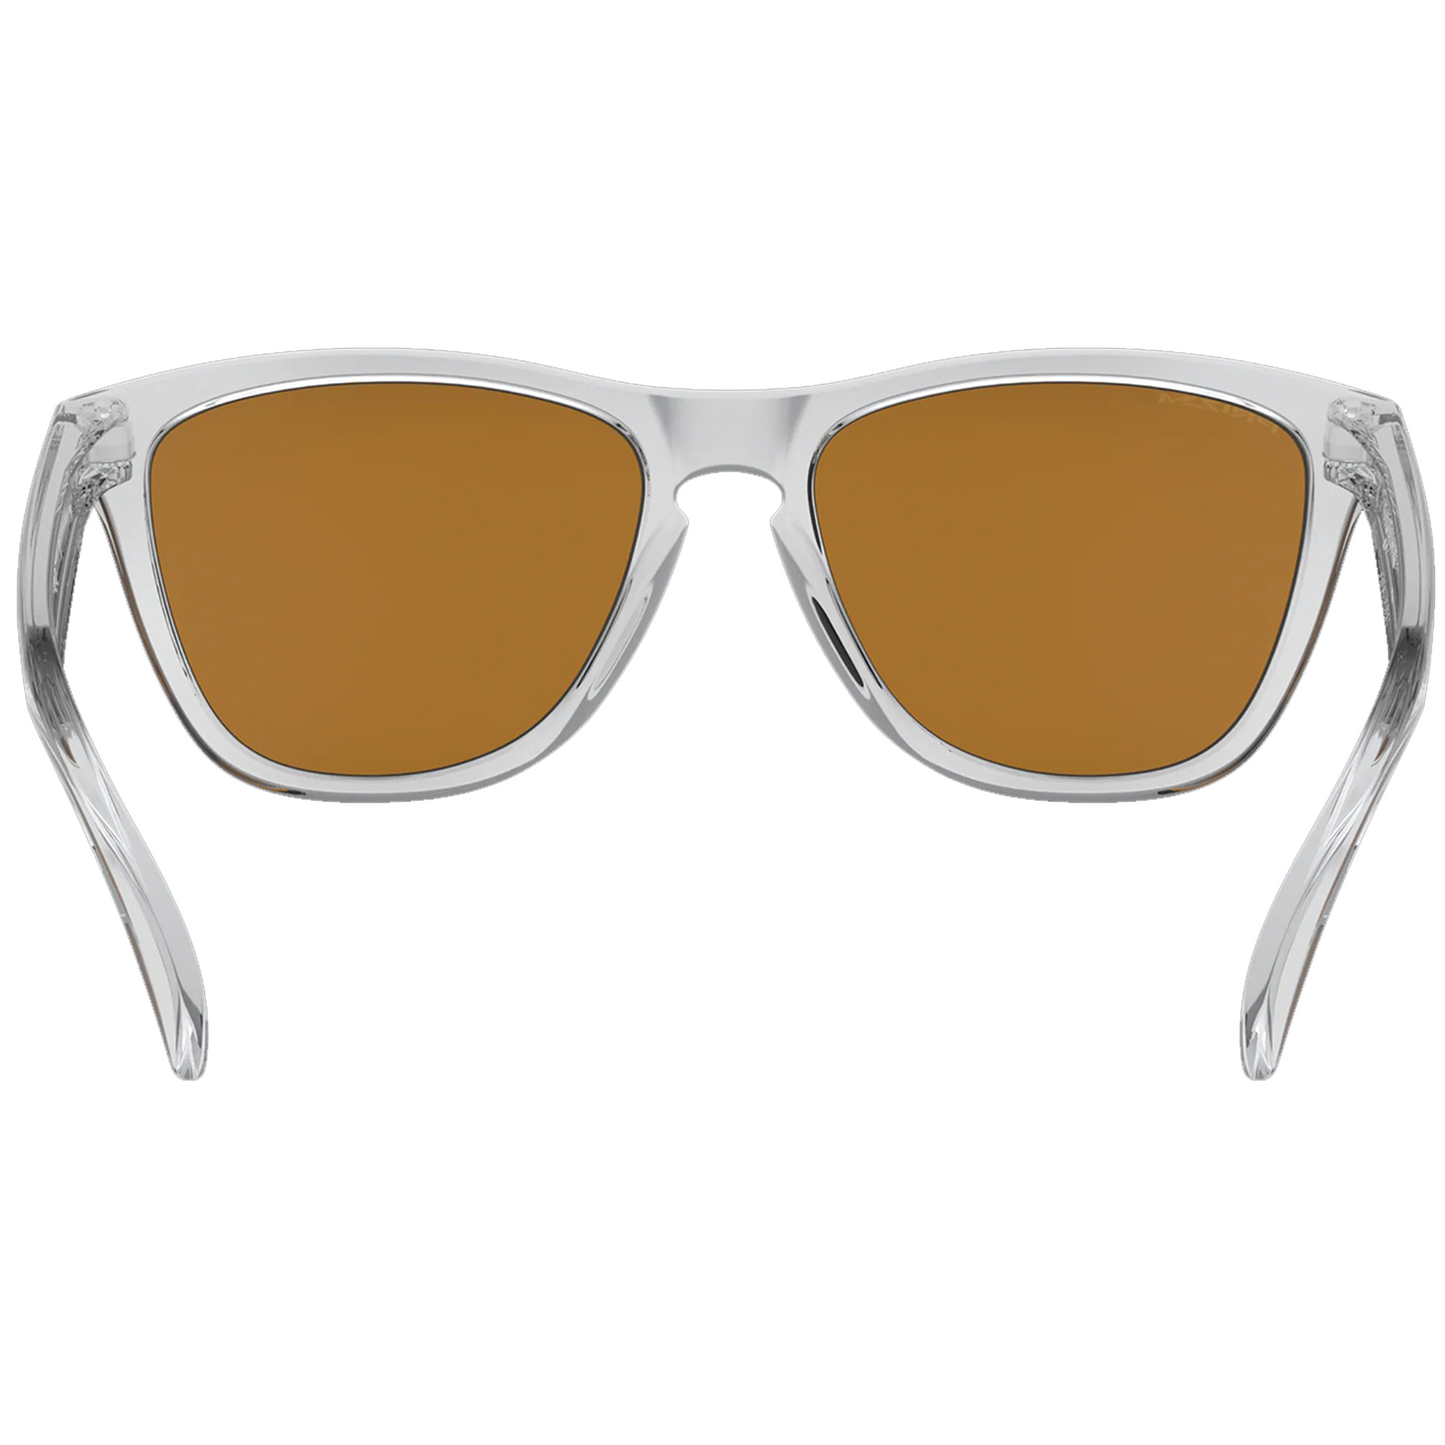 Oakley Frogskins Sunglasses (Polished Clear) Prizm Violet Lens - Free Case